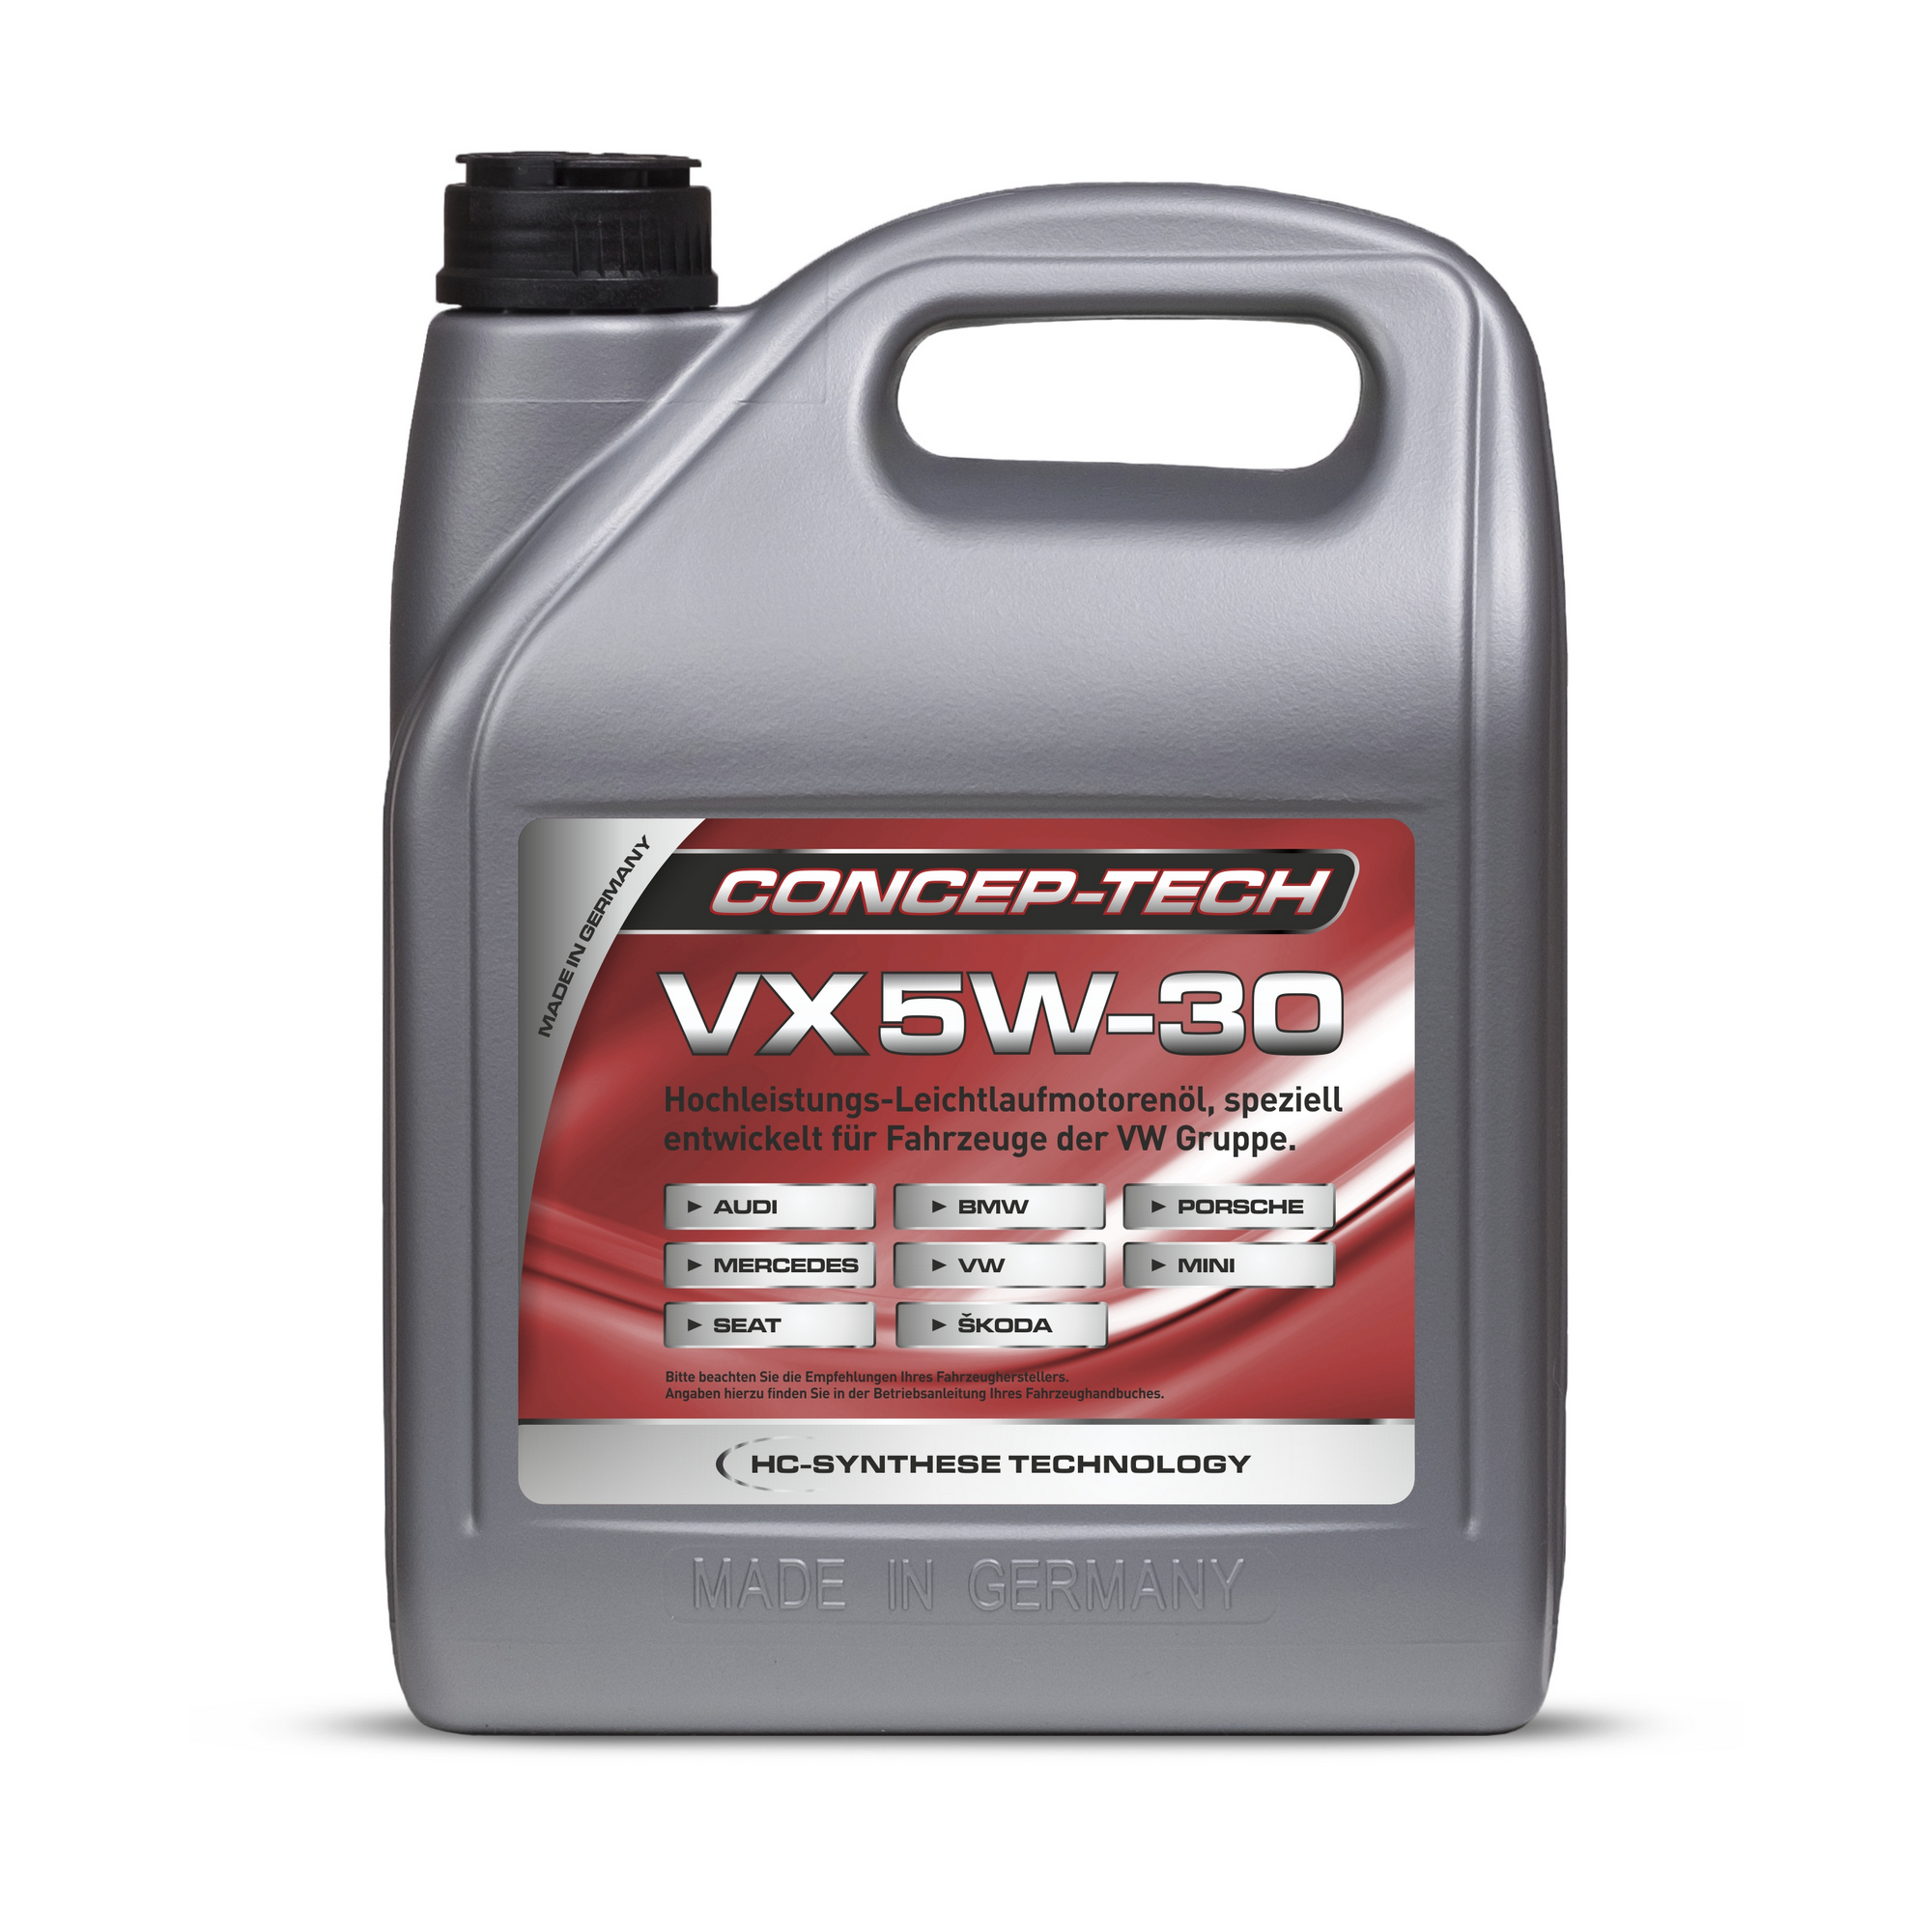 Hochleistungs-Leichtlaufmotorenöl VX 5W-30, 5 l + product picture